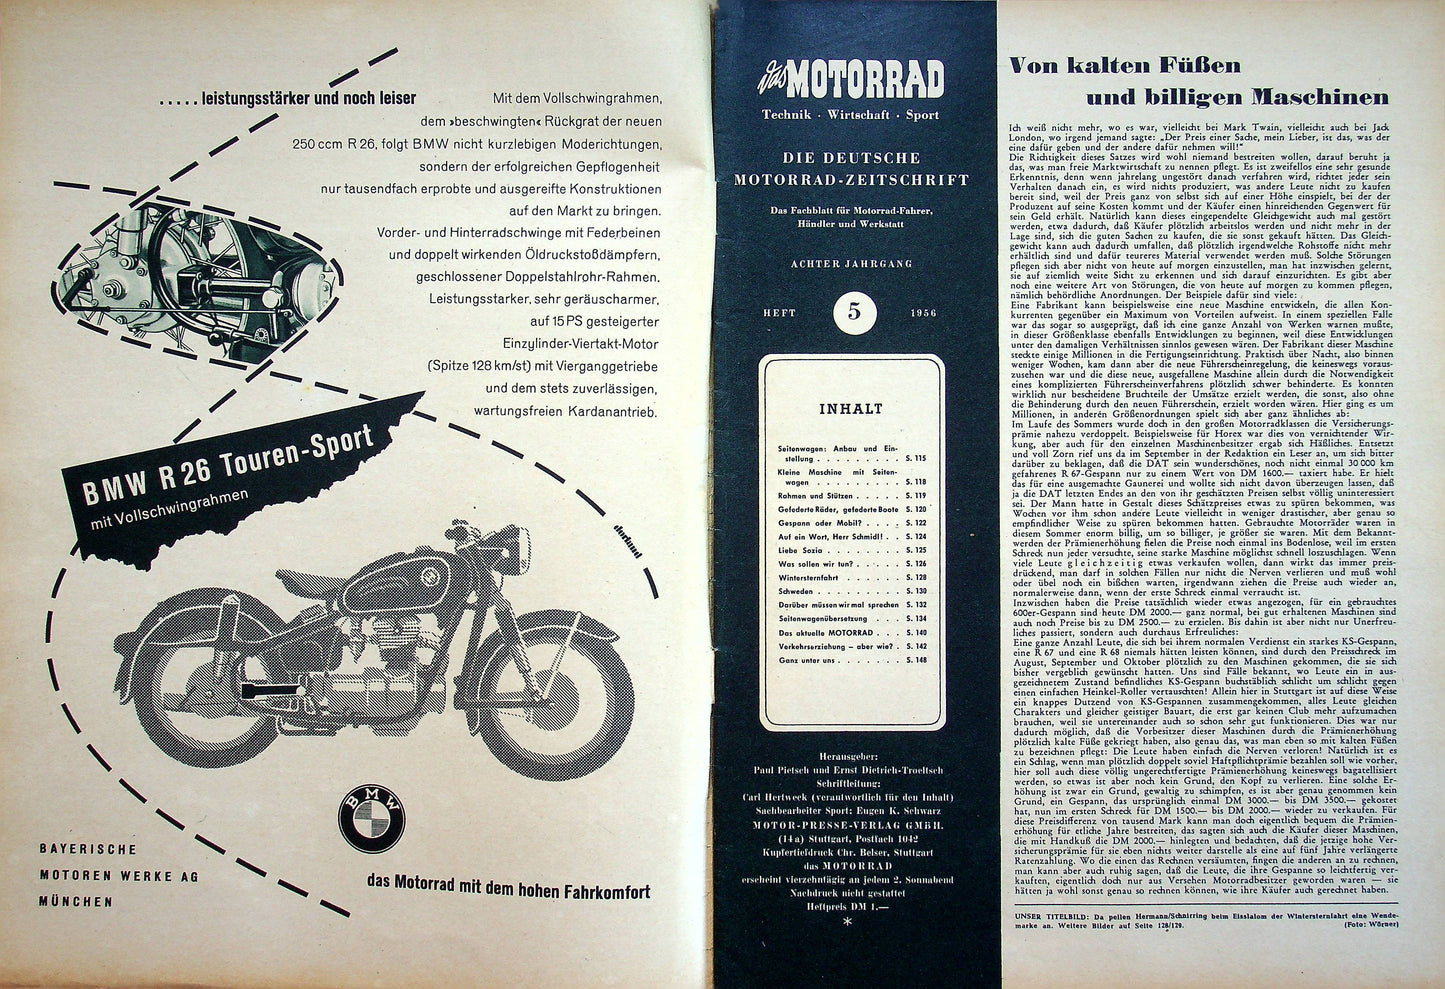 Motorrad 05/1956